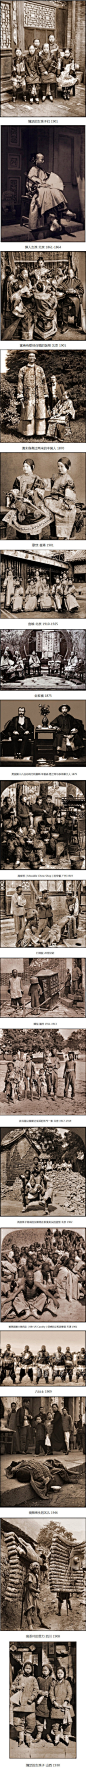 让人震撼的100年前中国的照片.